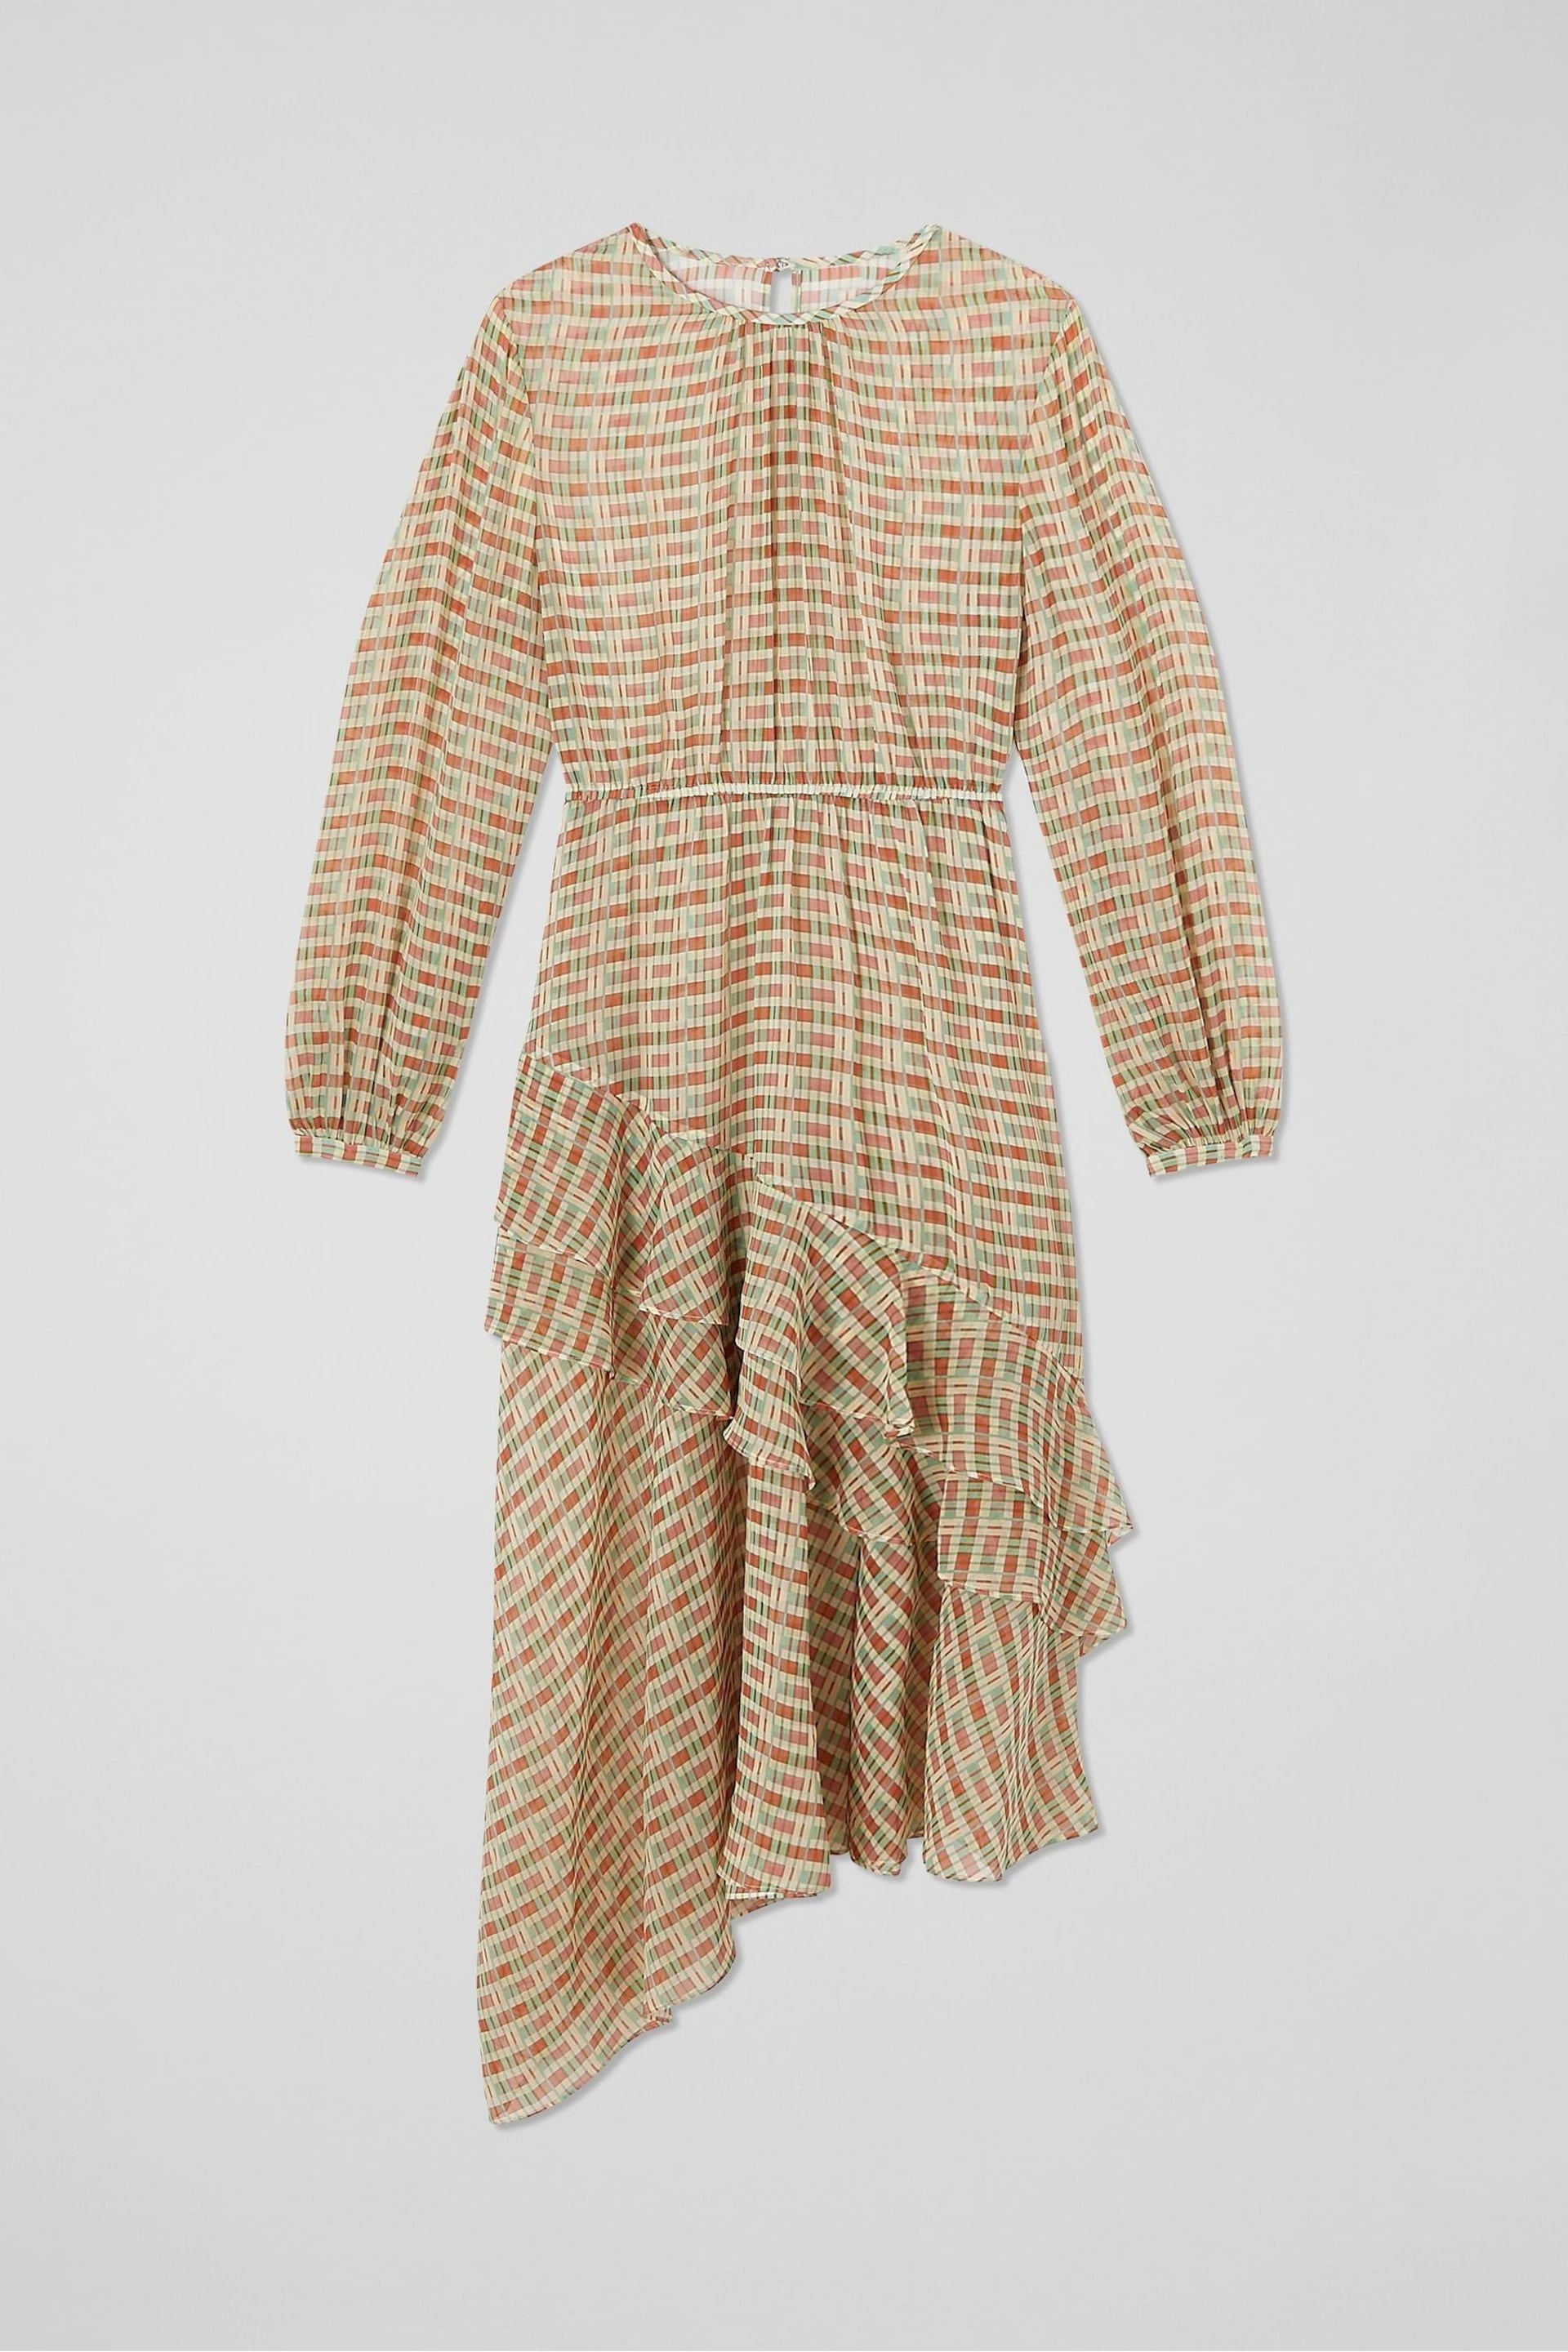 LK Bennett Mini Bea Check Silk Chiffon Ruffle Dress - Image 5 of 5